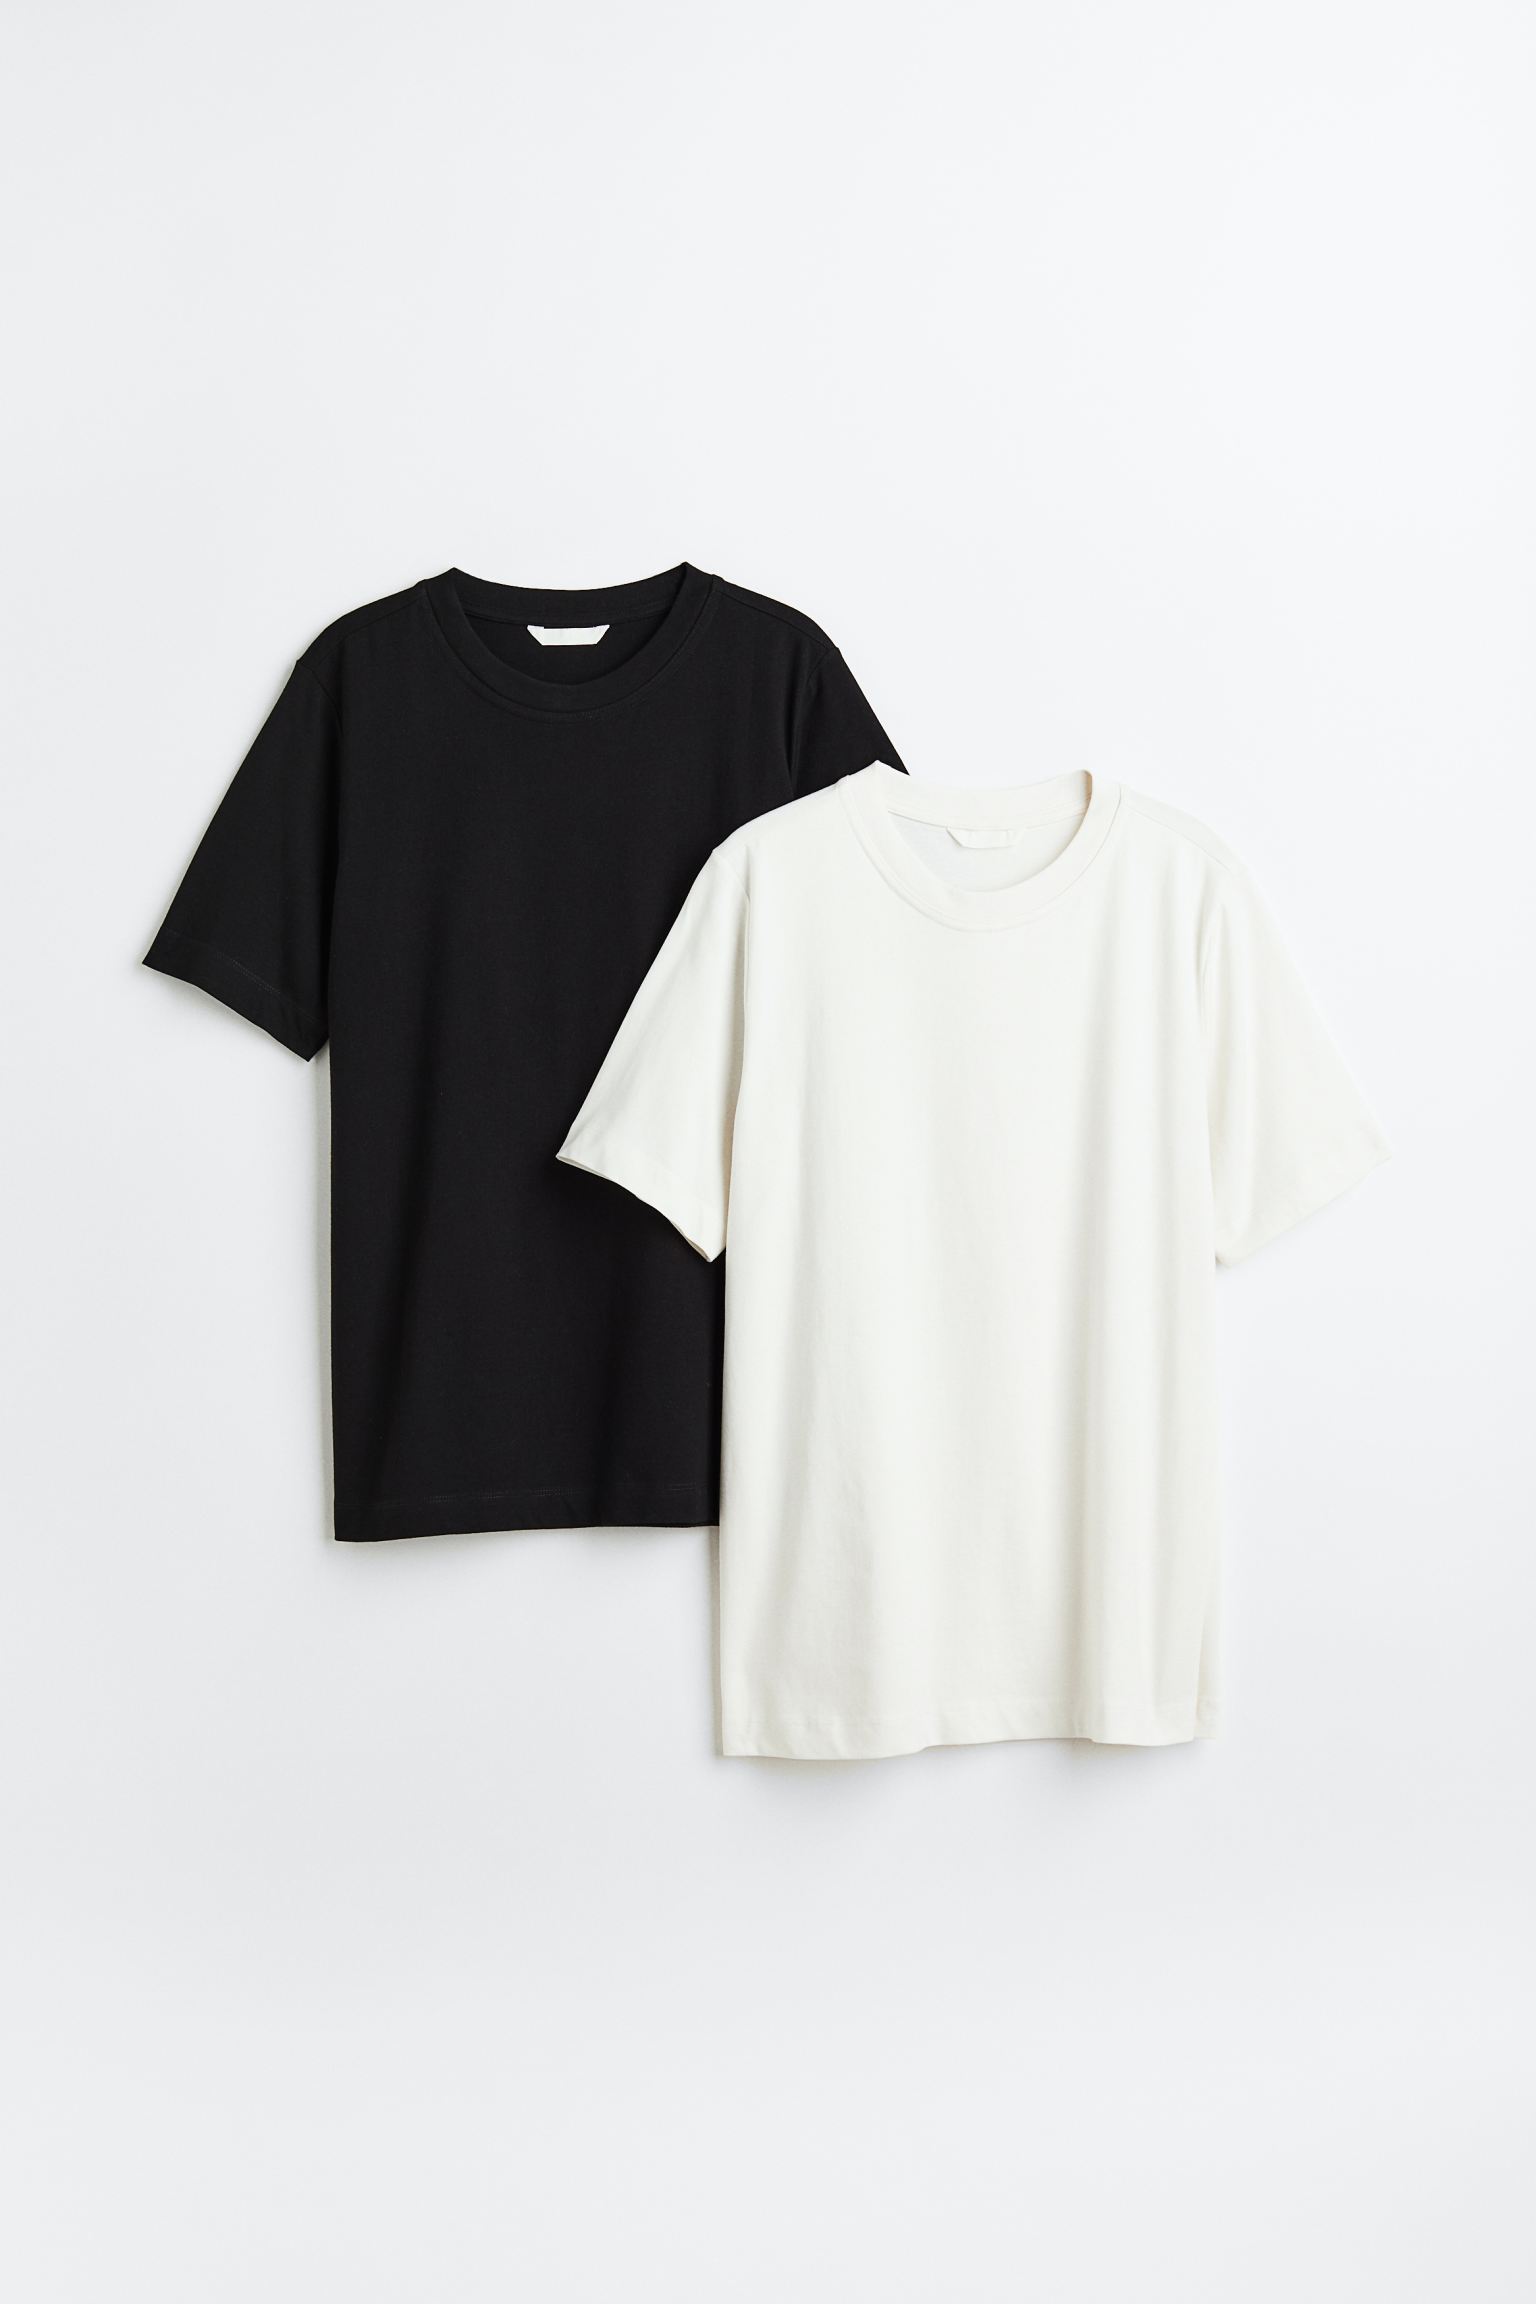 Комплект футболок женских H&M 1030468004 черных XL (доставка из-за рубежа)